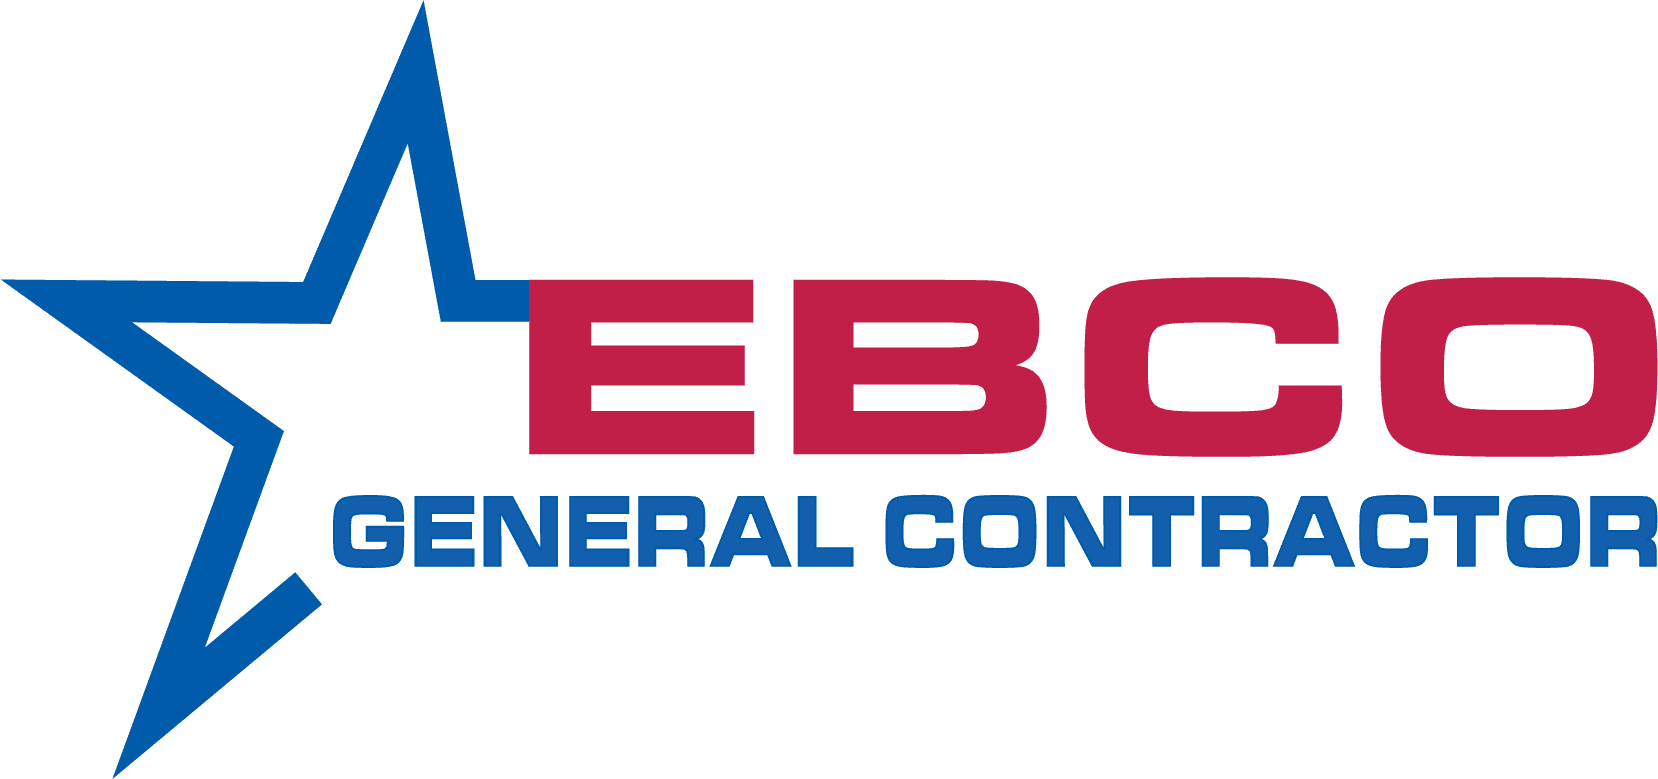 EBCO General Contractor